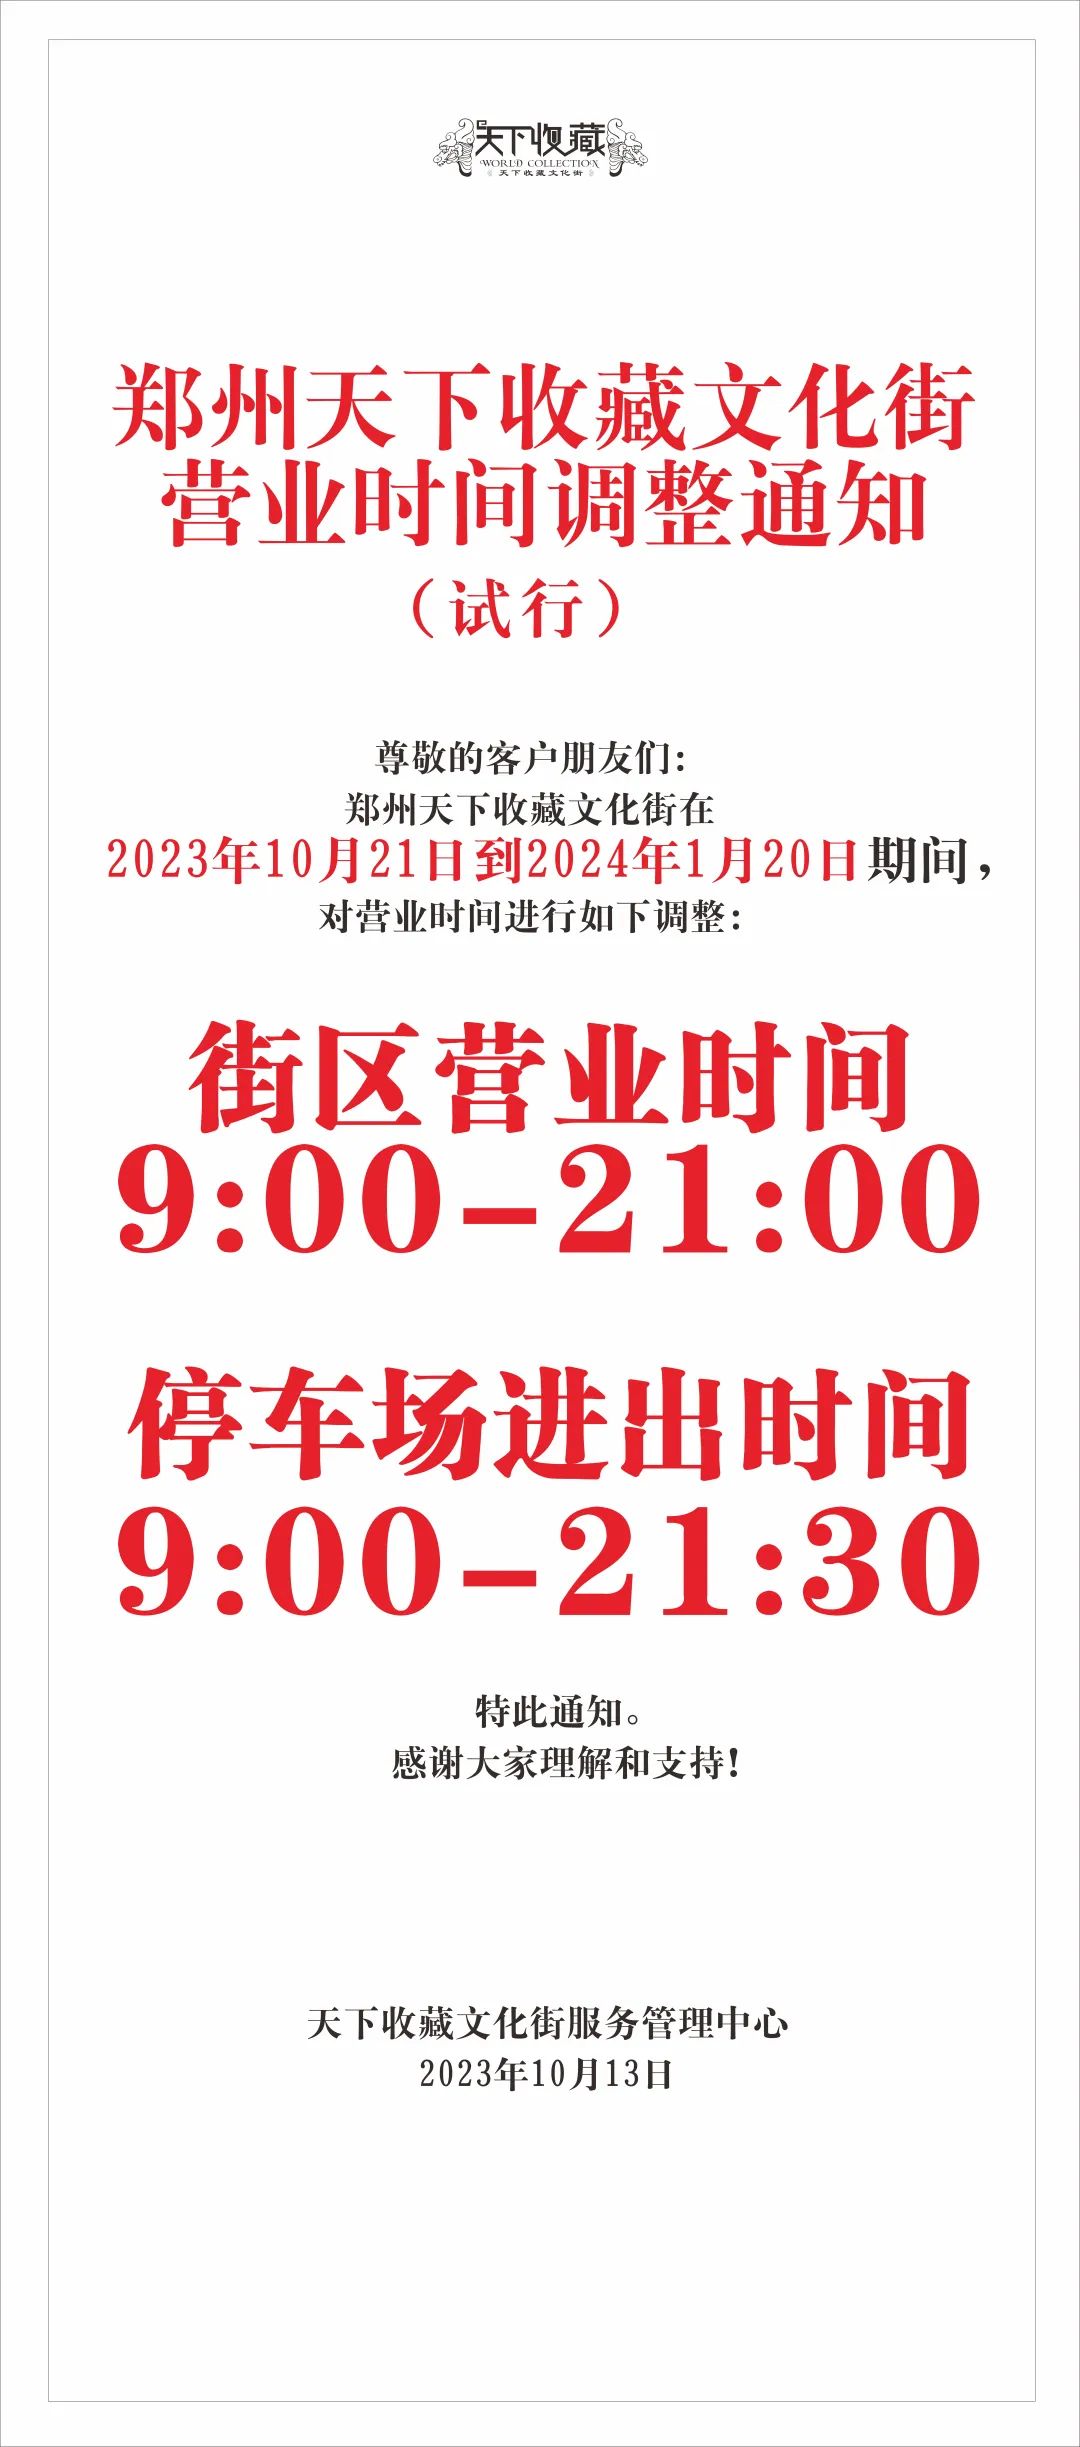 藏·通知 | 营业时间调整  10月21日试行(图1)